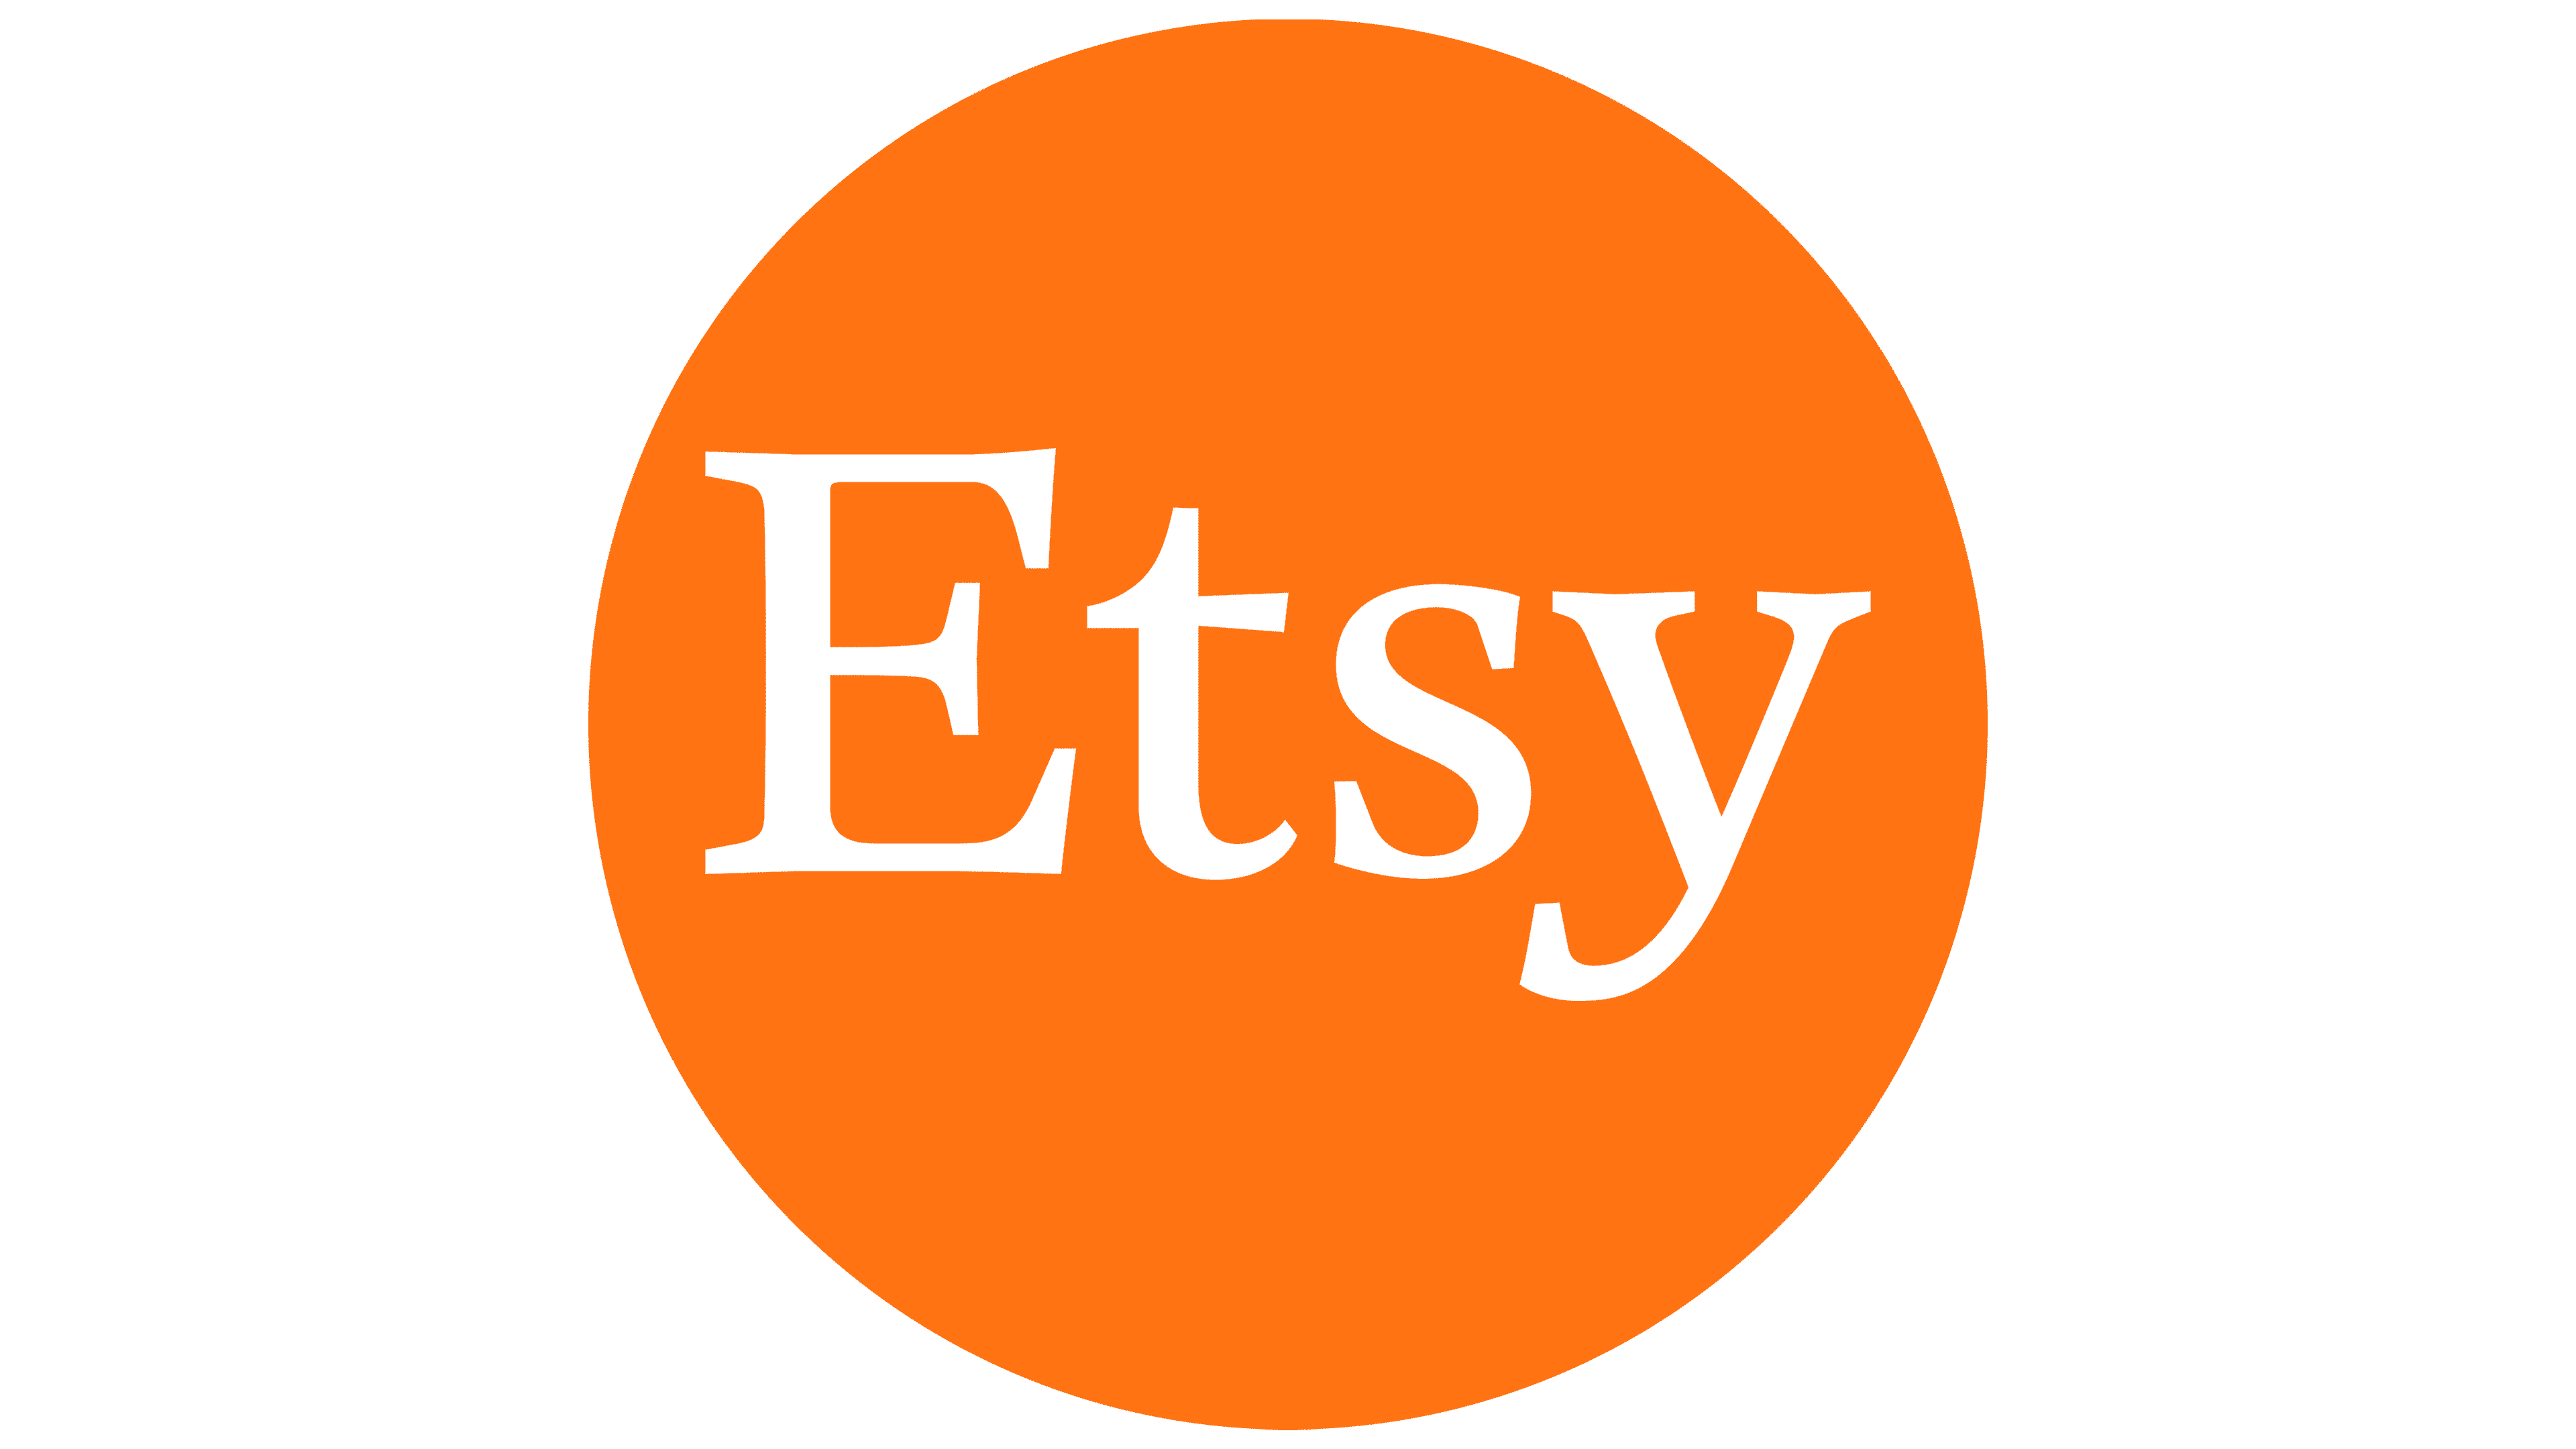 Etsy-Emblem